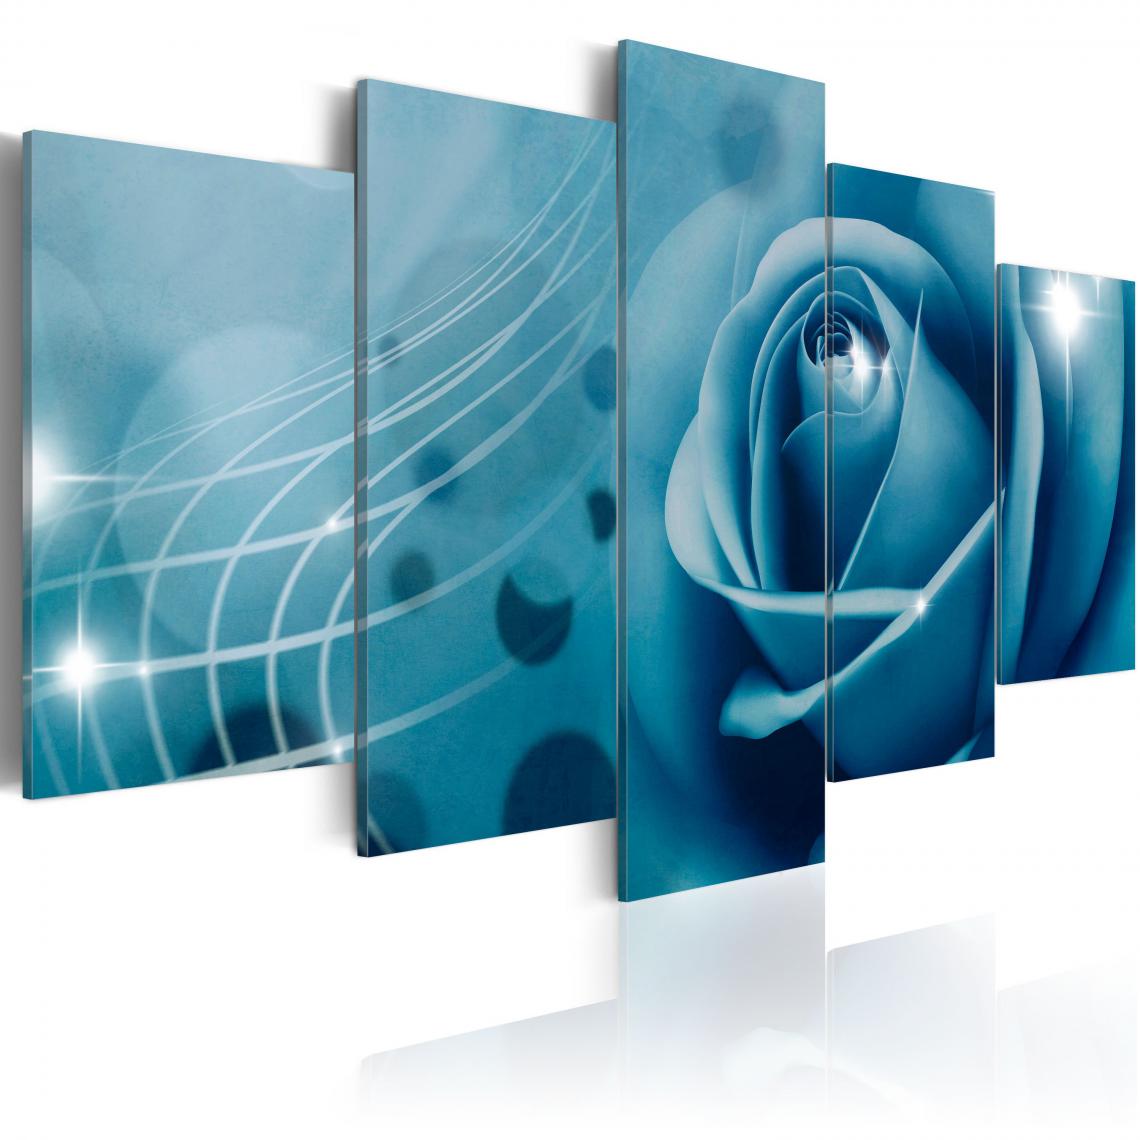 Decoshop26 - Tableau sur toile en 5 panneaux décoration murale image imprimée cadre en bois à suspendre Beauté bleue 200x100 cm 11_0009633 - Tableaux, peintures